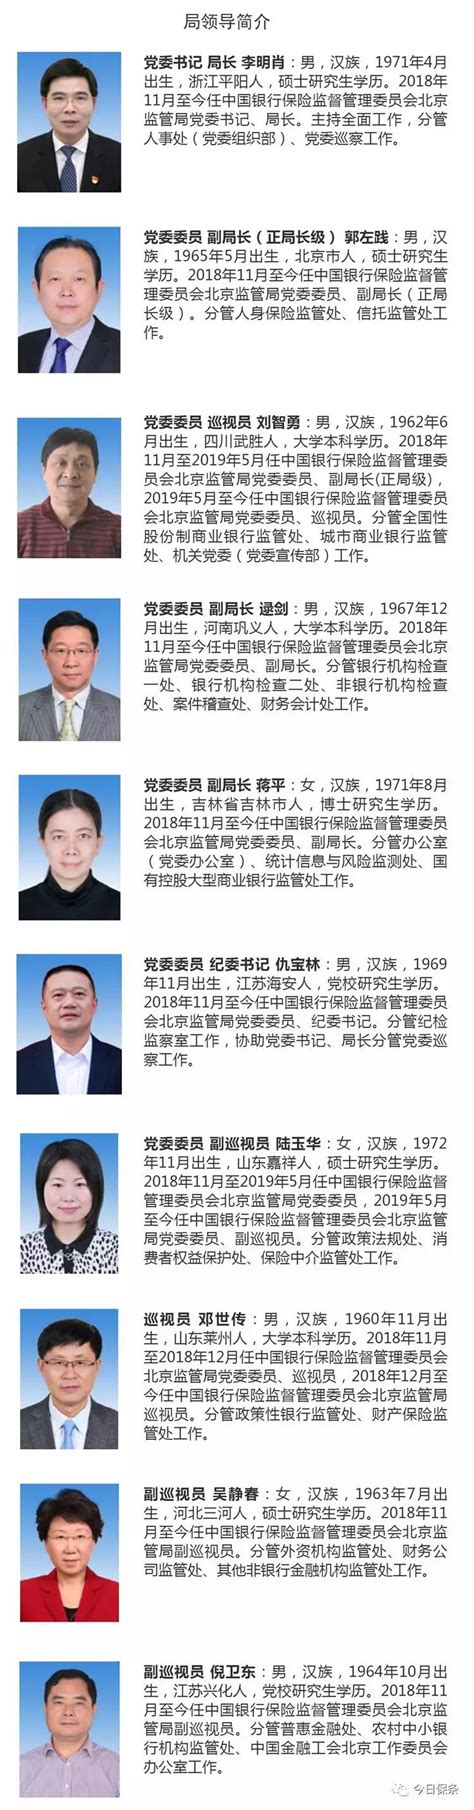 超详细 | 36个银保监局领导班子成员简介和分工-搜狐大视野-搜狐新闻